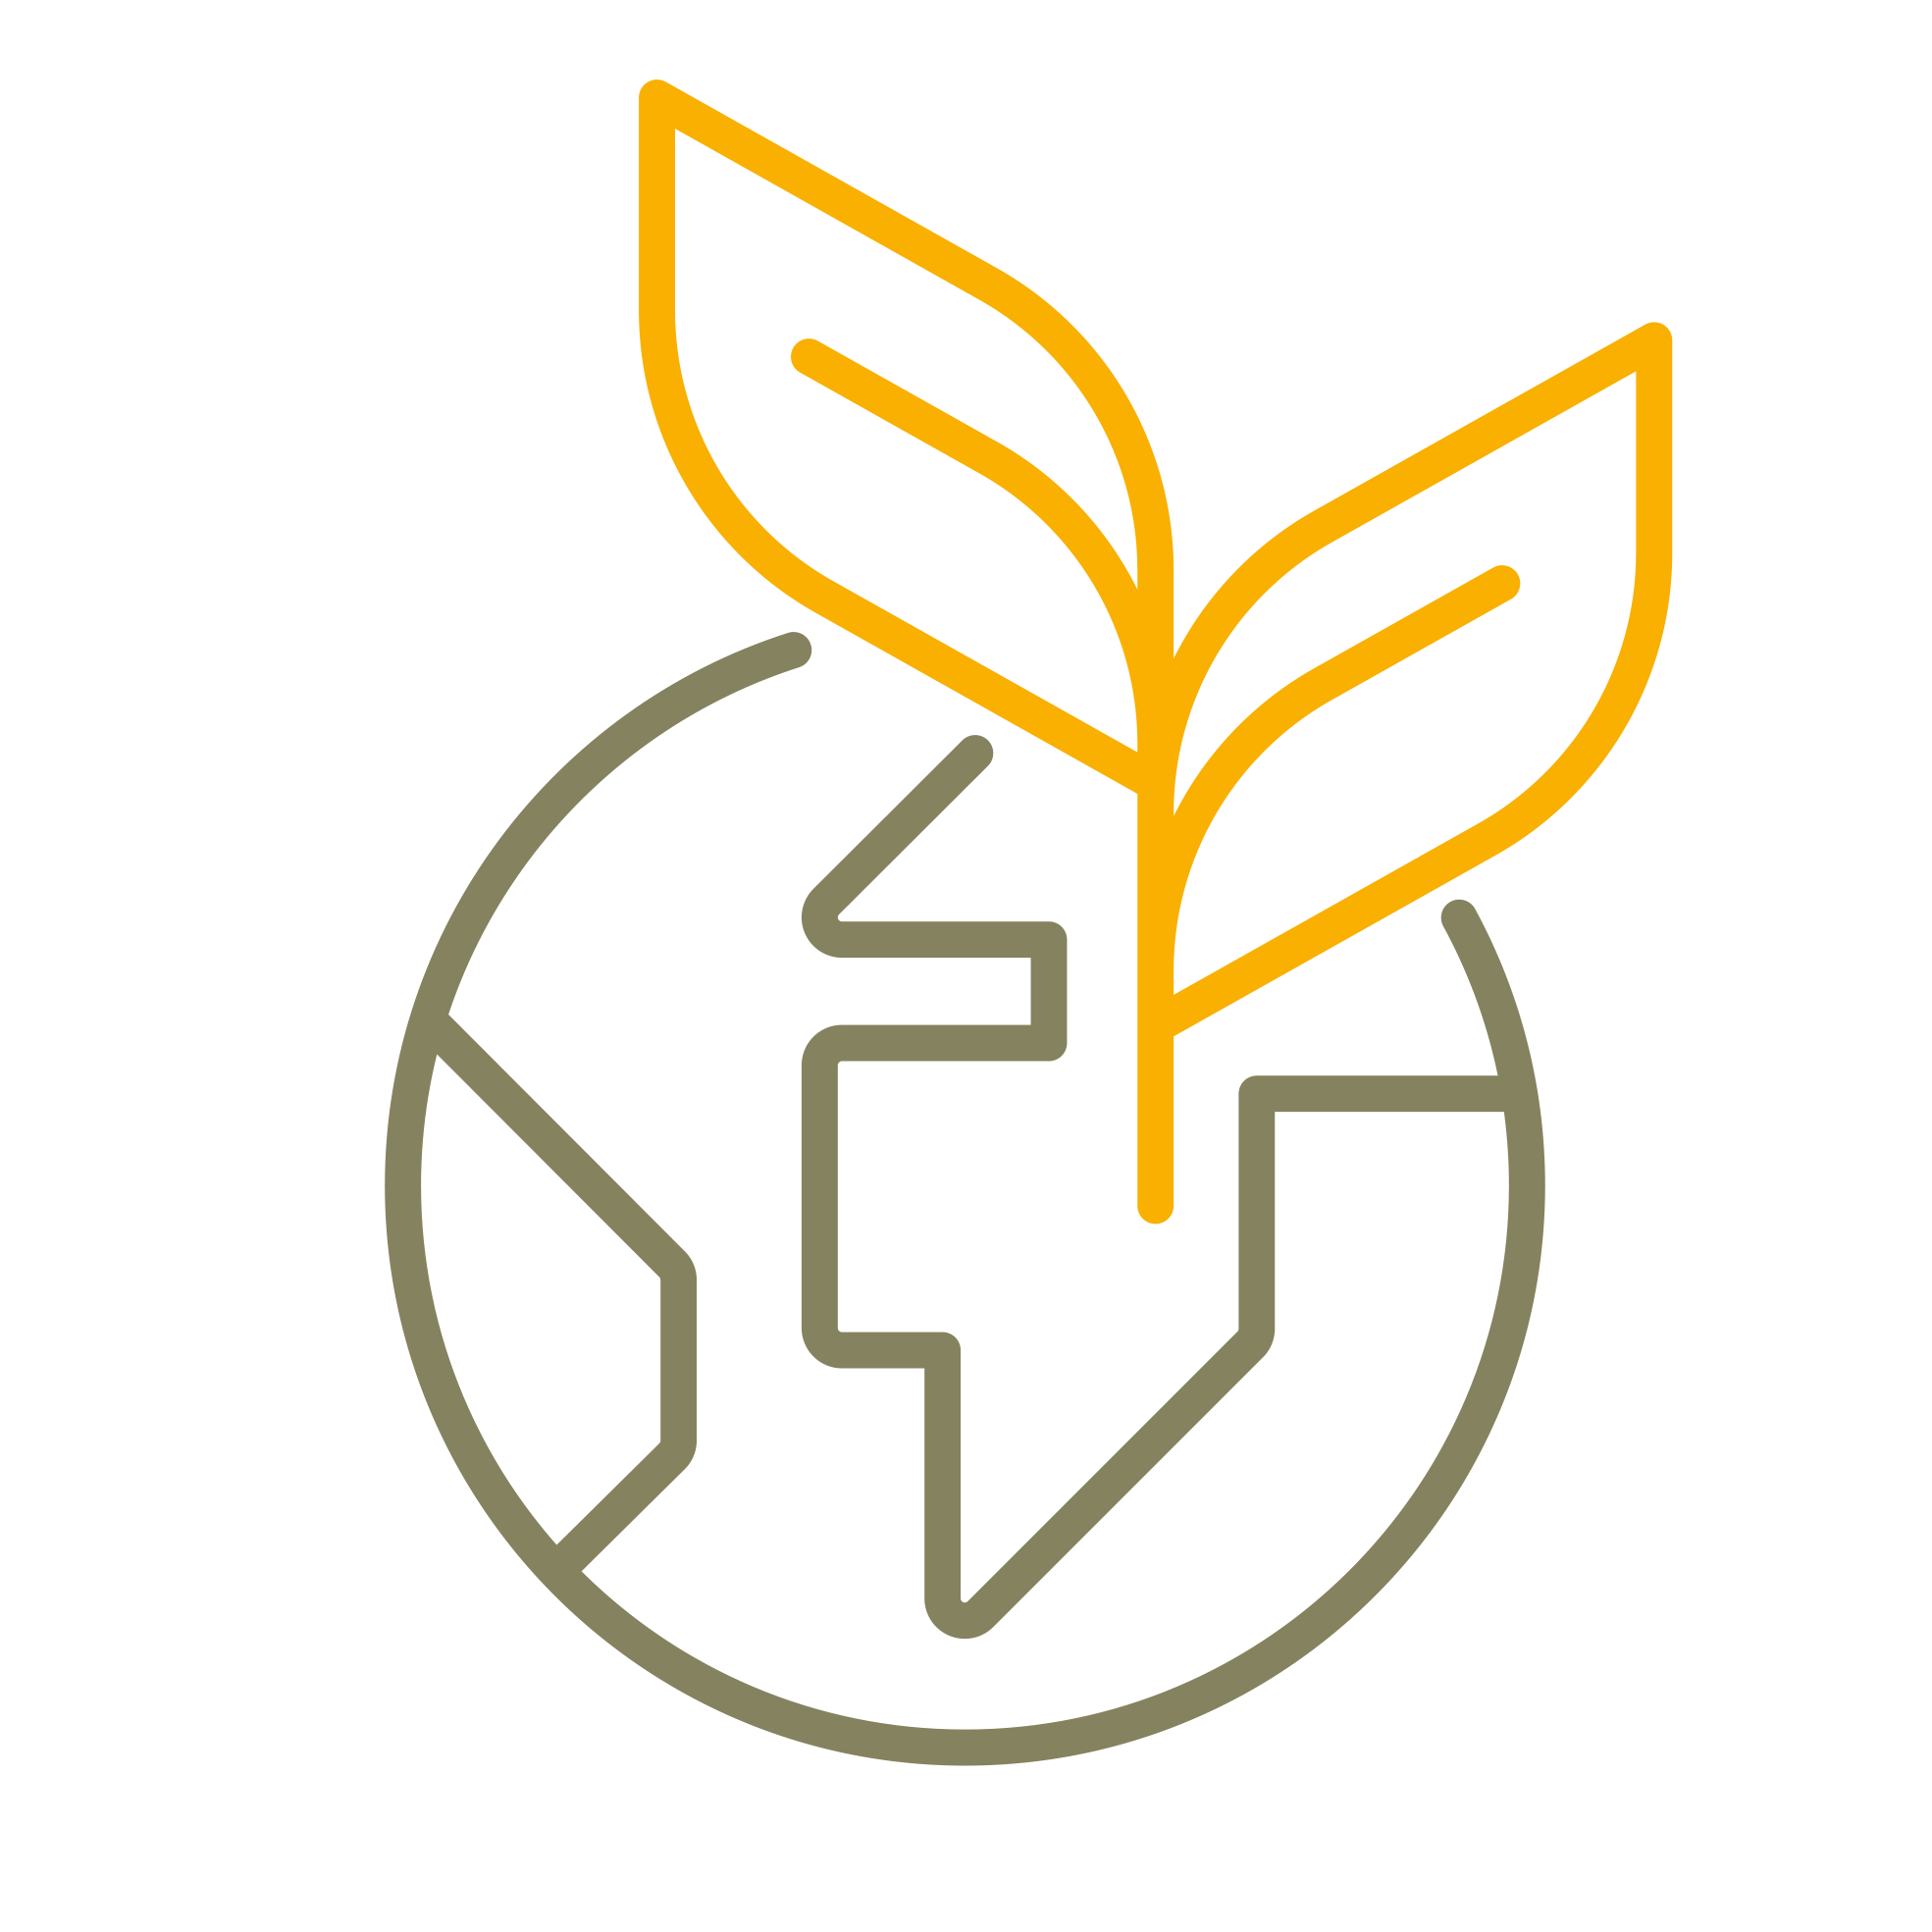 Symbol zeigt eine vereinfacht dargestellte Weltkugel aus braunen Linien und eine zweiblättrige Pflanze aus gelben Linien